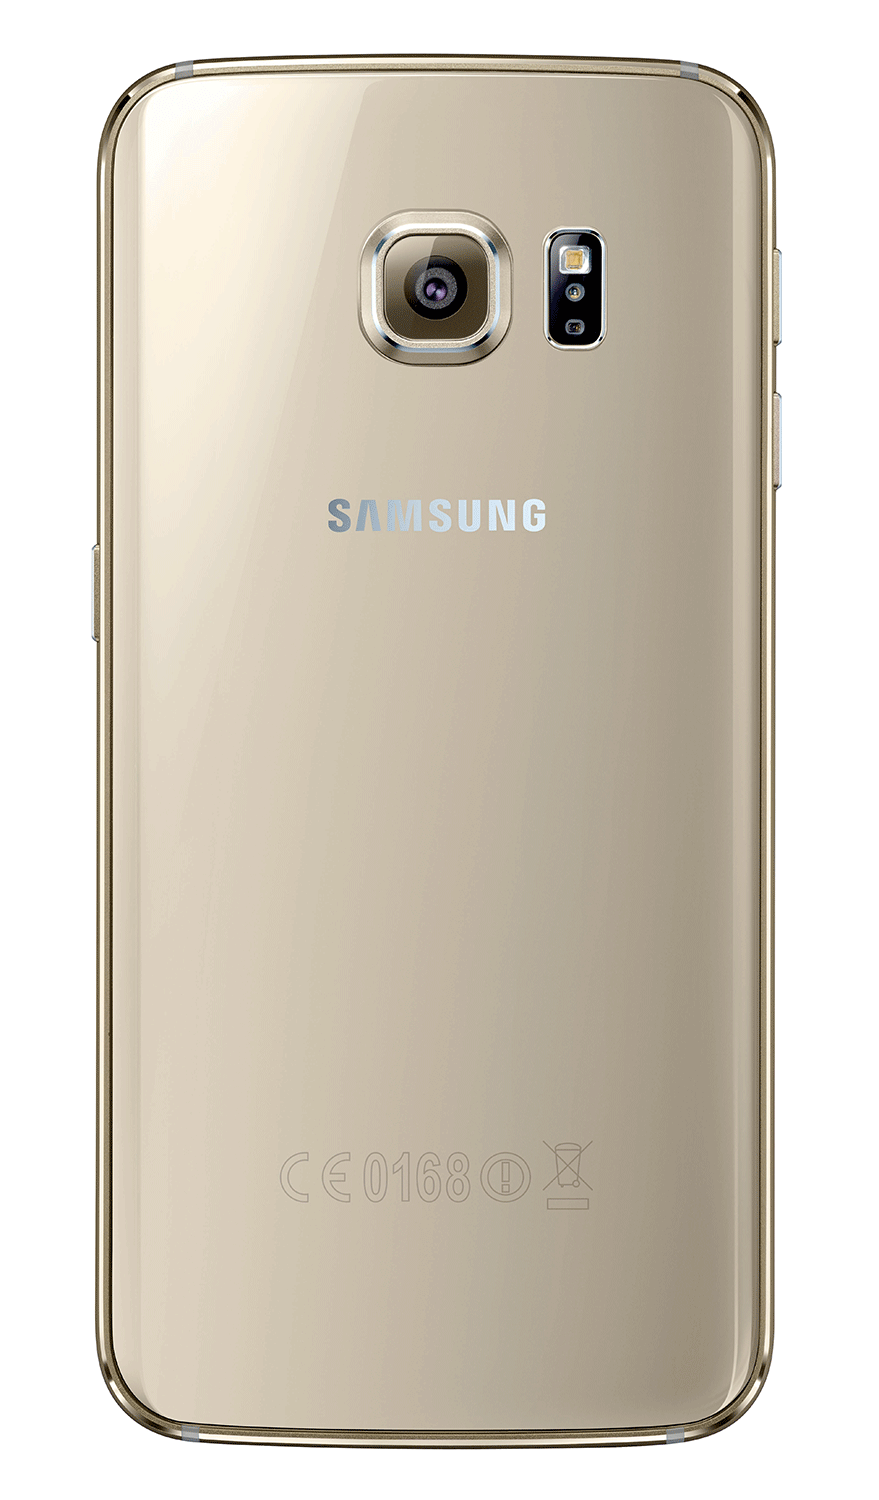 Samsung Galaxy S6 Edge vista trasera en color oro